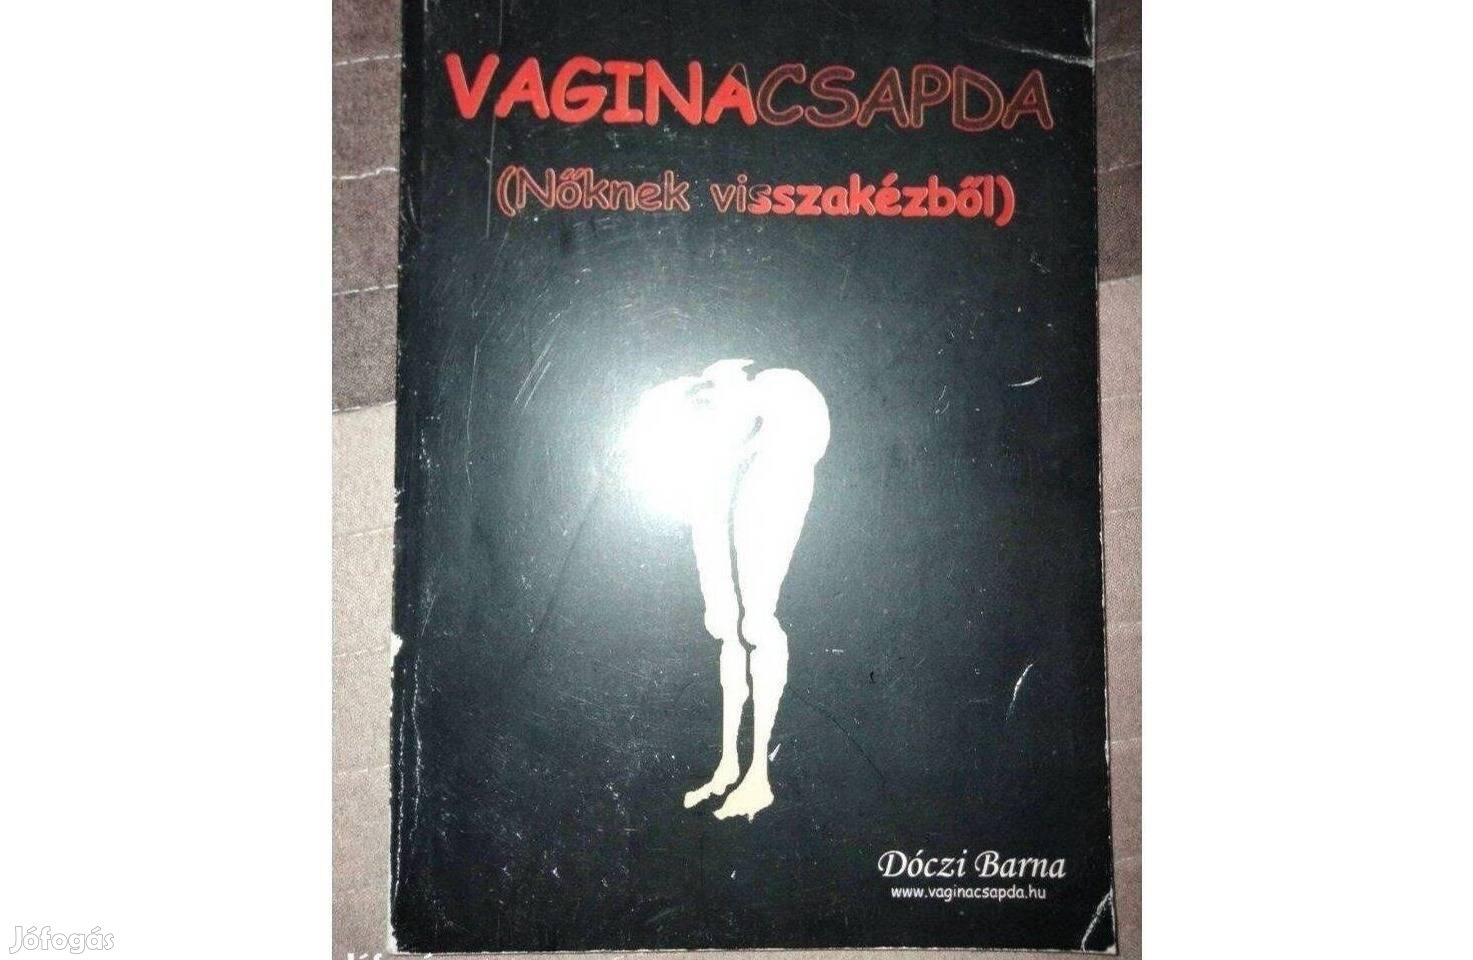 Dóczi Barna : Vaginacsapda (Nőknek visszakézből)